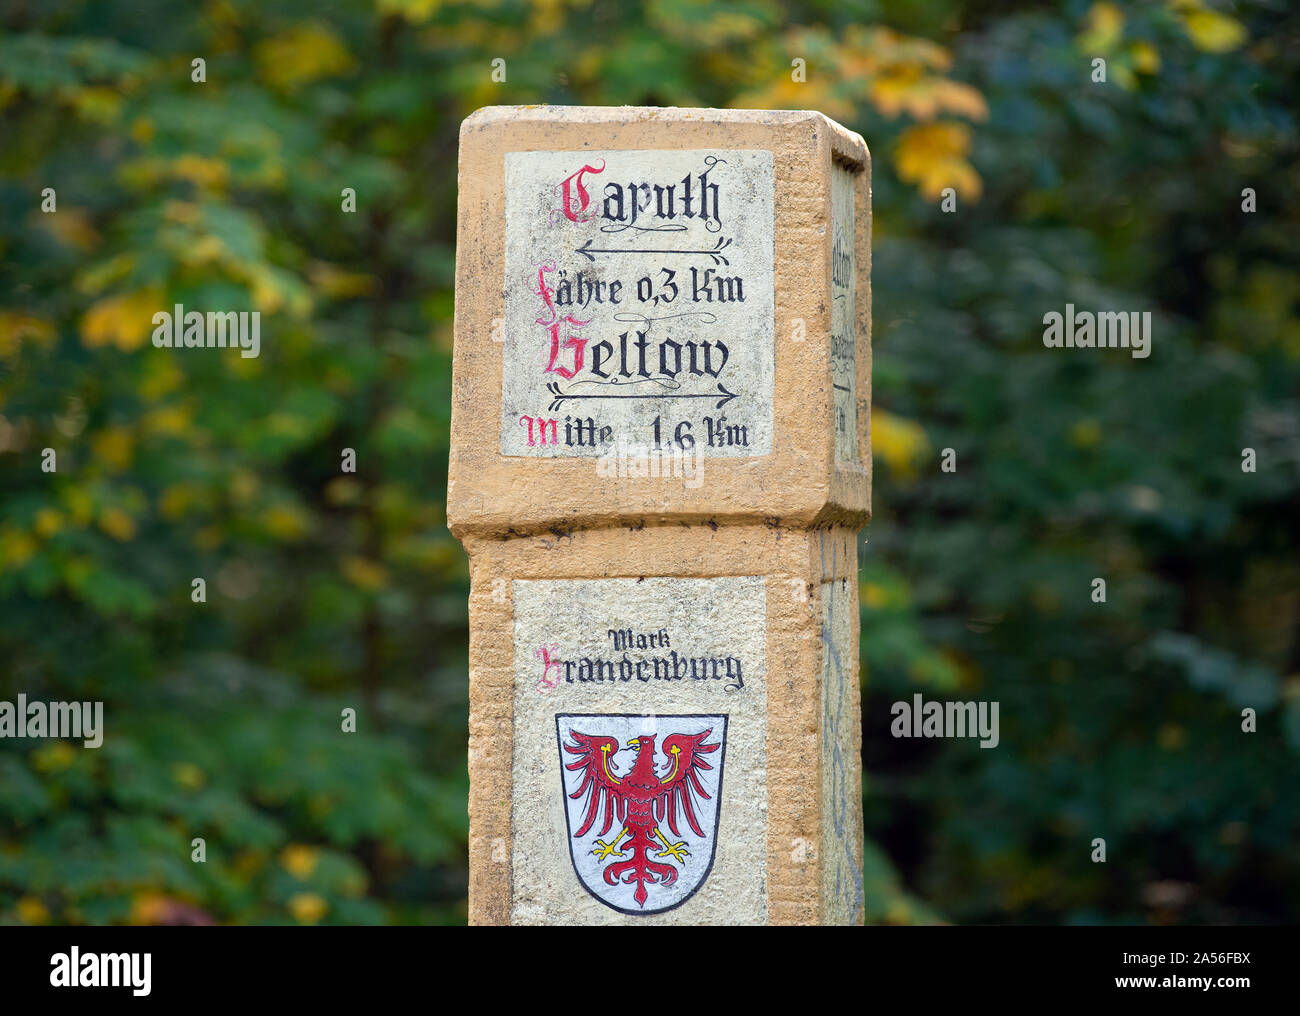 Caputh, Alemania. 14 Oct, 2019. En un aspecto ligeramente capeado junto al puente de piedra sobre el camino a Caputh-Fähre Wentorfgraben y Geltow está indicado. Crédito: Soeren Bozo/dpa-Zentralbild/ZB/dpa/Alamy Live News Foto de stock